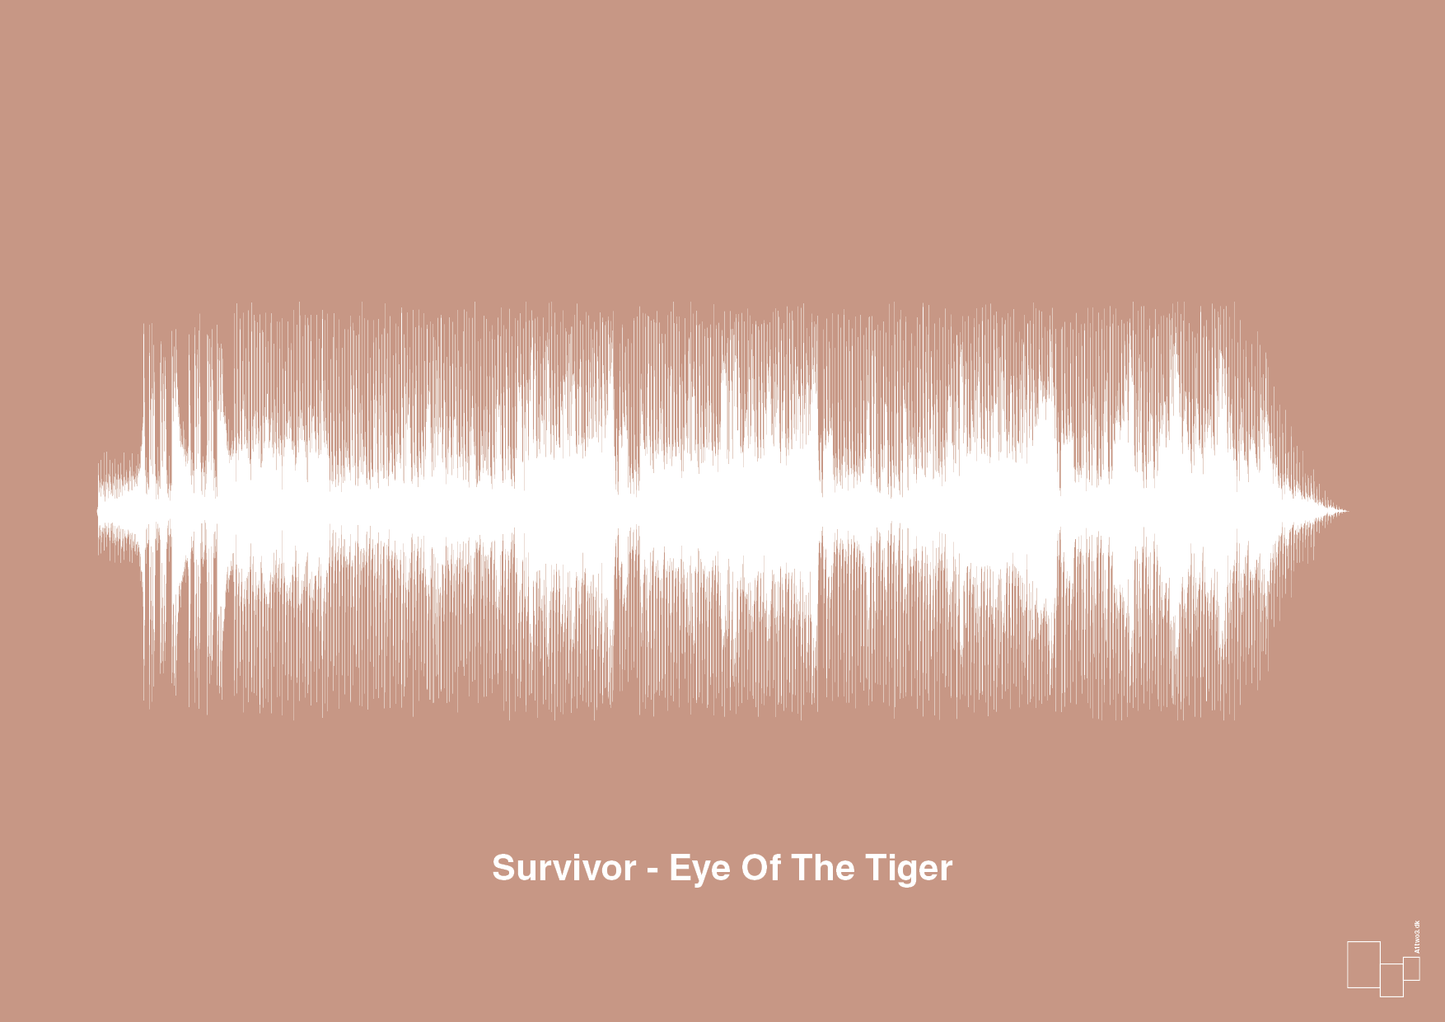 survivor - eye of the tiger - Plakat med Musik i Powder